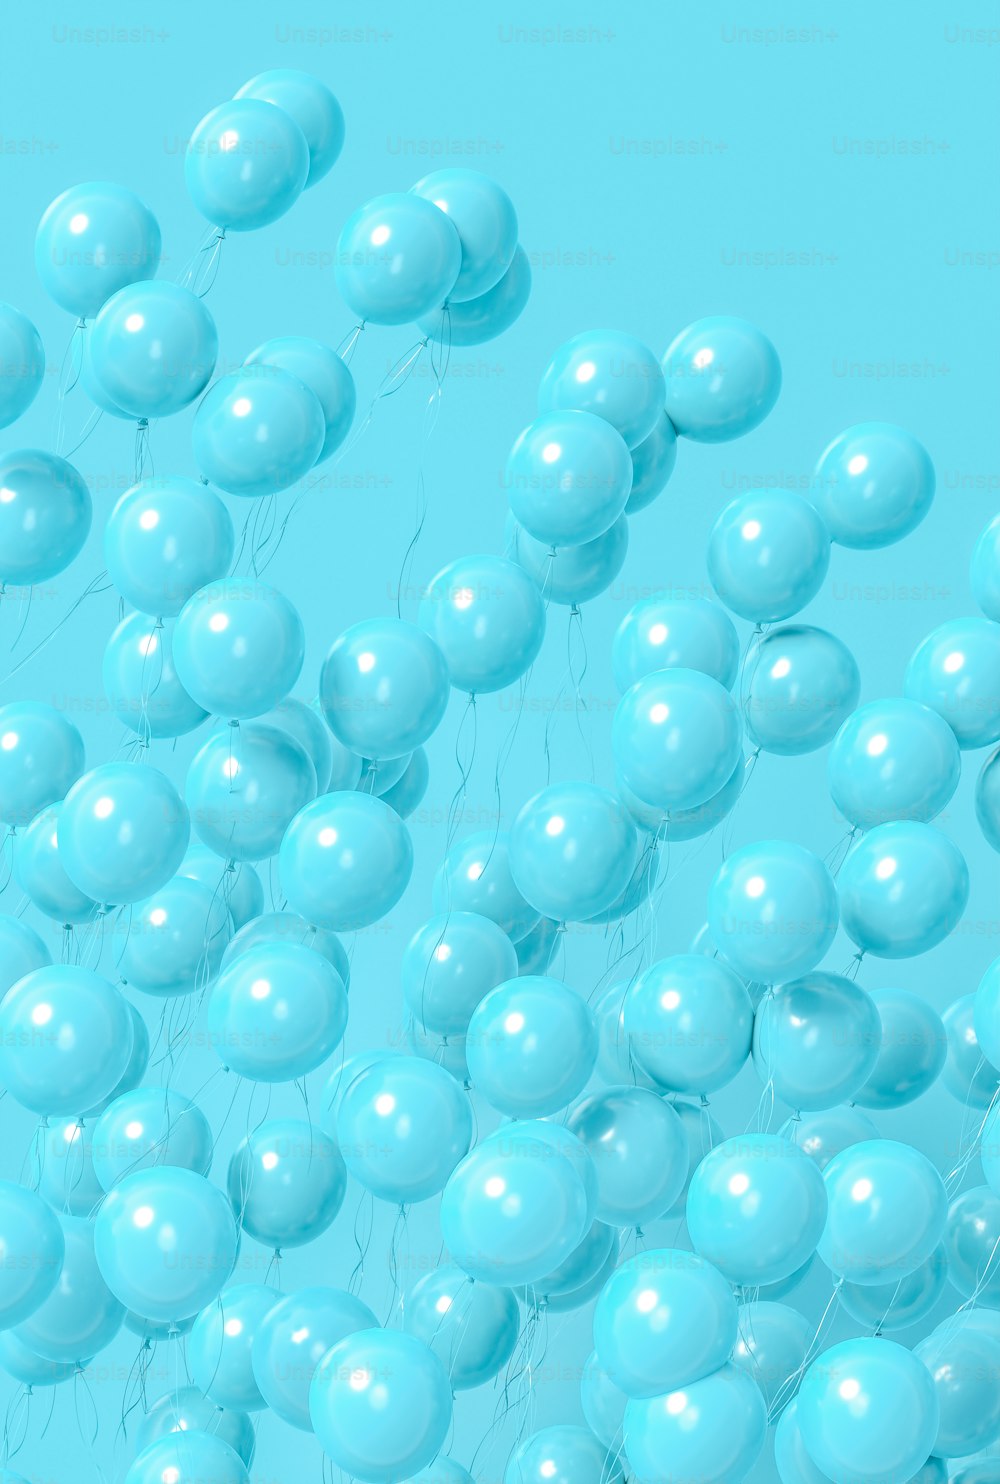 Un bouquet de ballons bleus flottant dans les airs